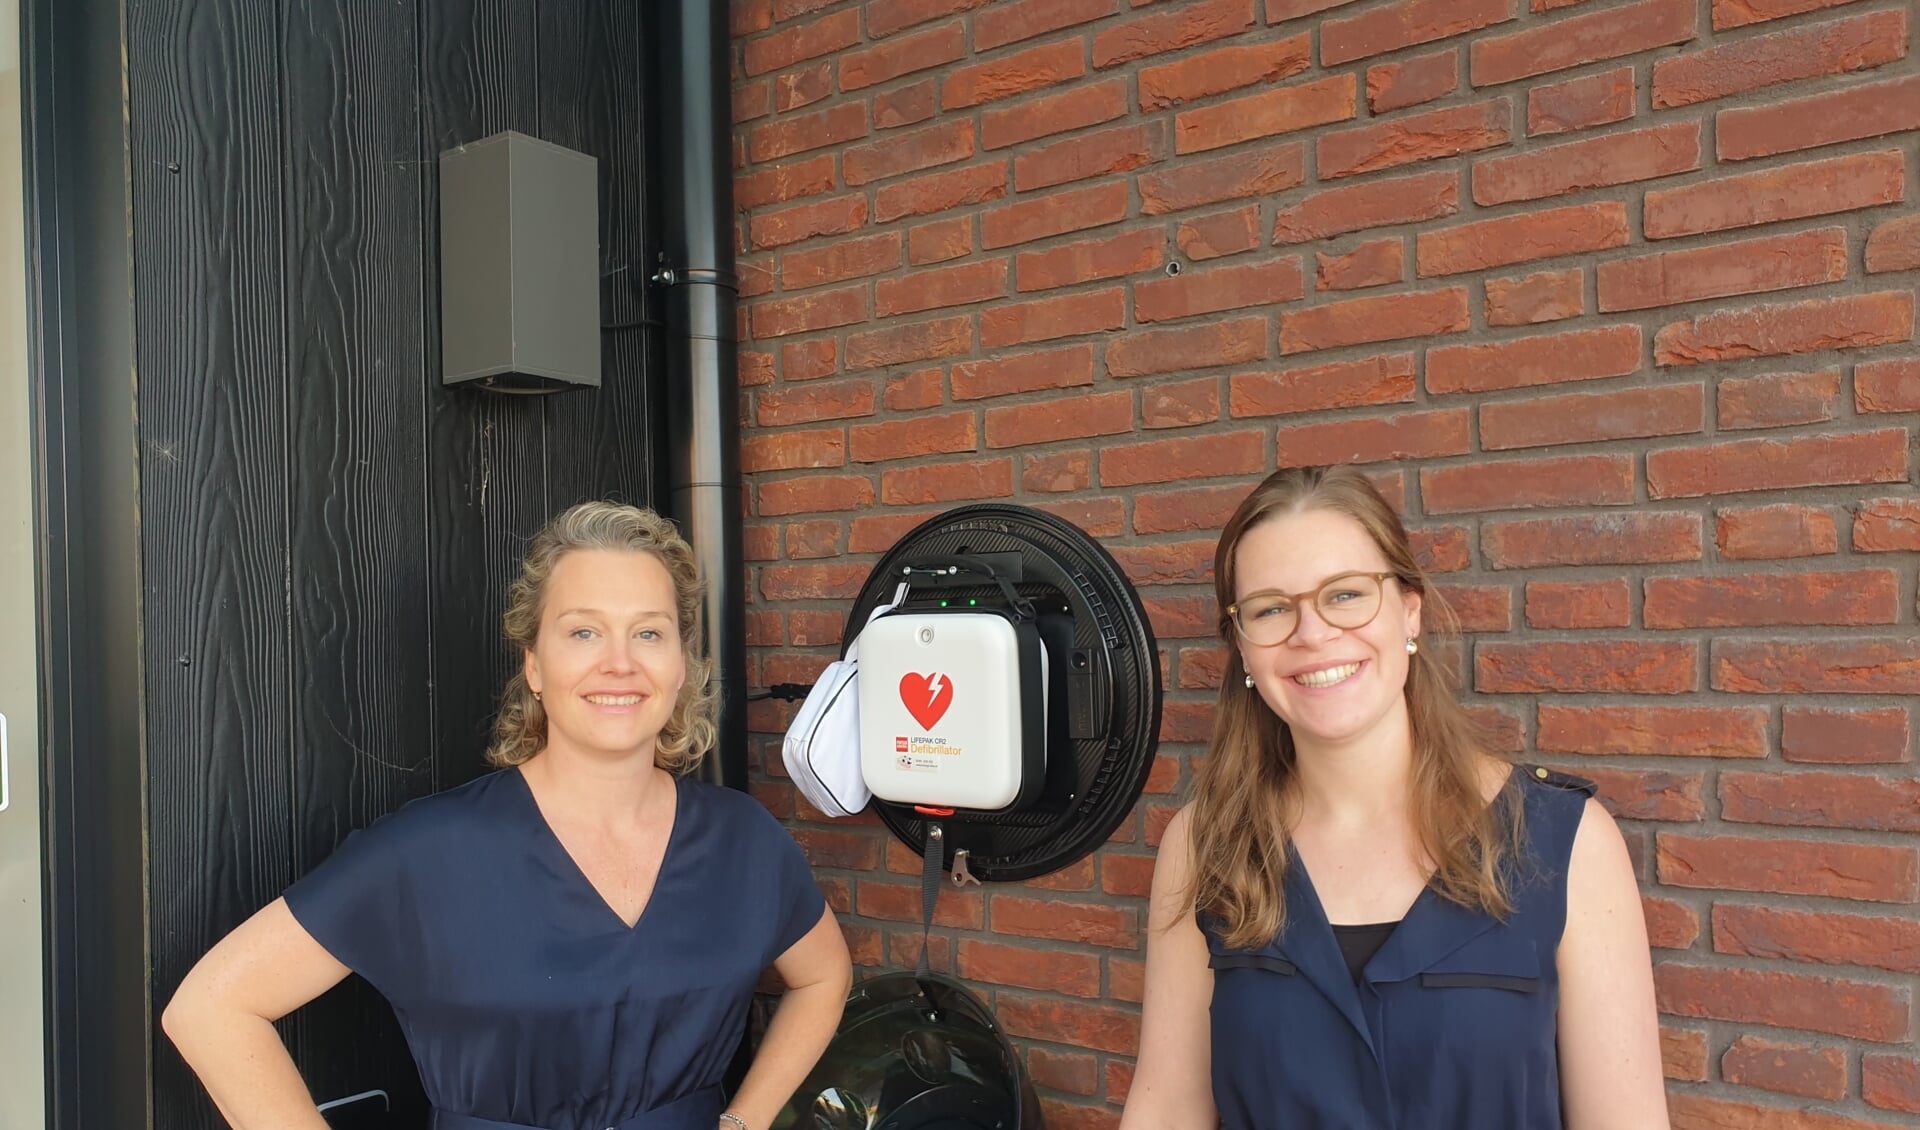 Dokter mevr. Diana de Jonge en Praktijkmanager Nikki de Jong bij de nieuwe AED van d'Alburcht in Wijk en Aalburg.